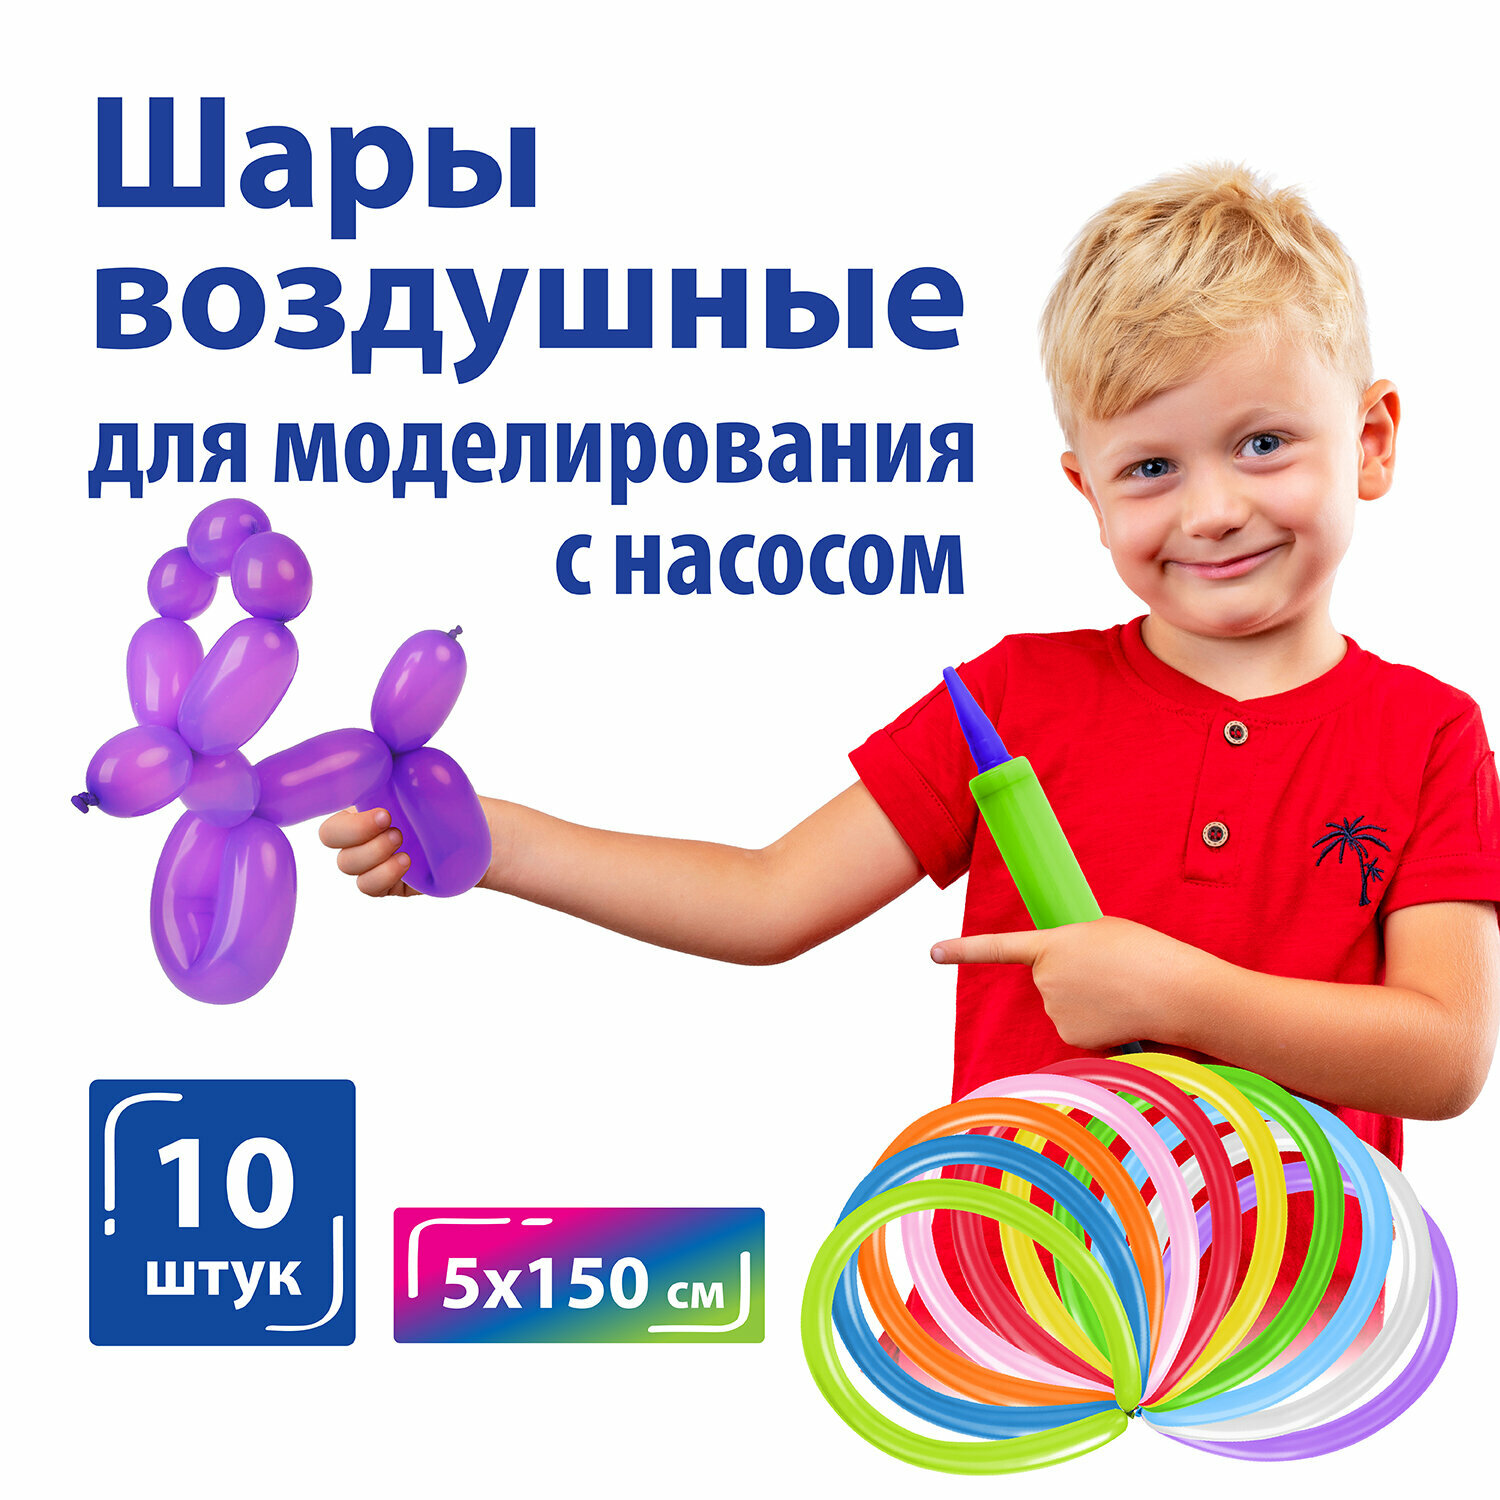 Воздушные шары для праздника, воздушные шарики набор на день рождения для моделирования Золотая Сказка, 2х60" (5х150 см), 10 штук с насосом